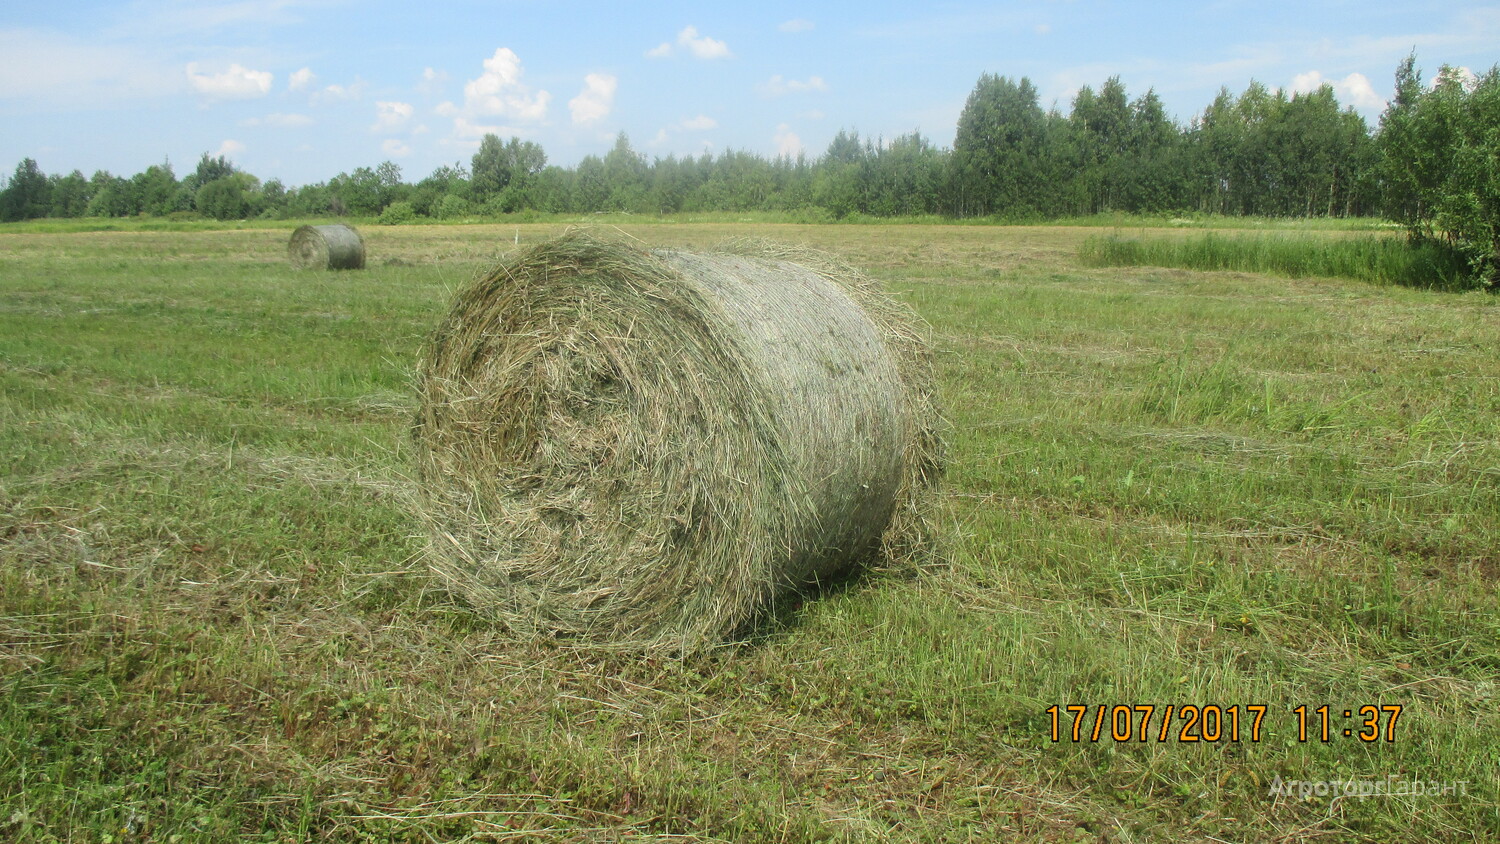 15 кг сена. Сено в тюках 250 кг. Размер рулона сена. Диаметр рулона сена 250 кг. Сено в рулонах в Лебяжье Кировской области.